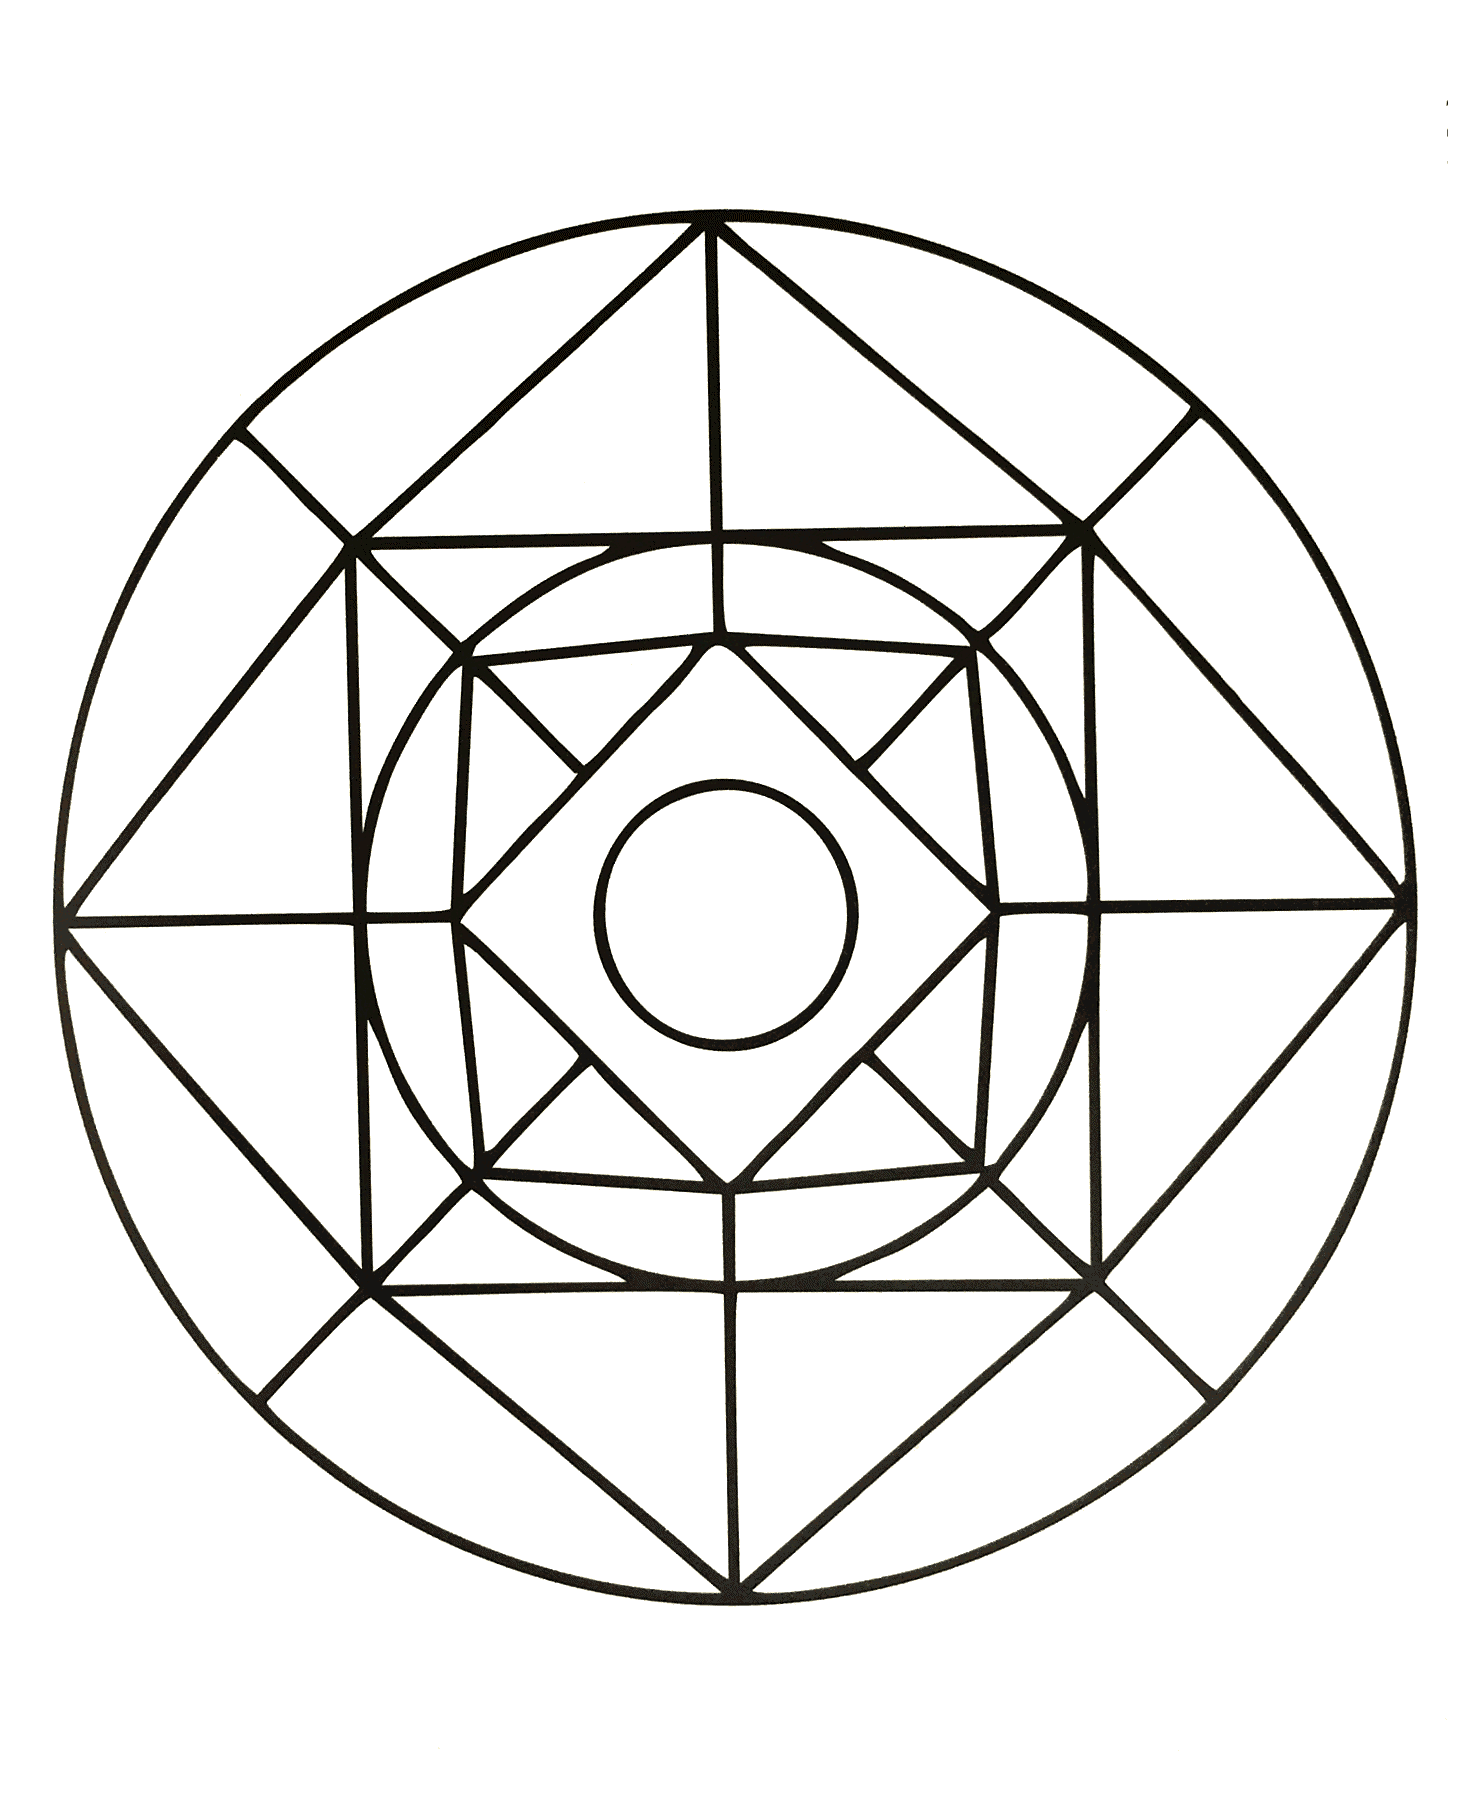 Uma bonita mandala geométrica com vários quadrados e um círculo no meio. É muito fácil de colorir.